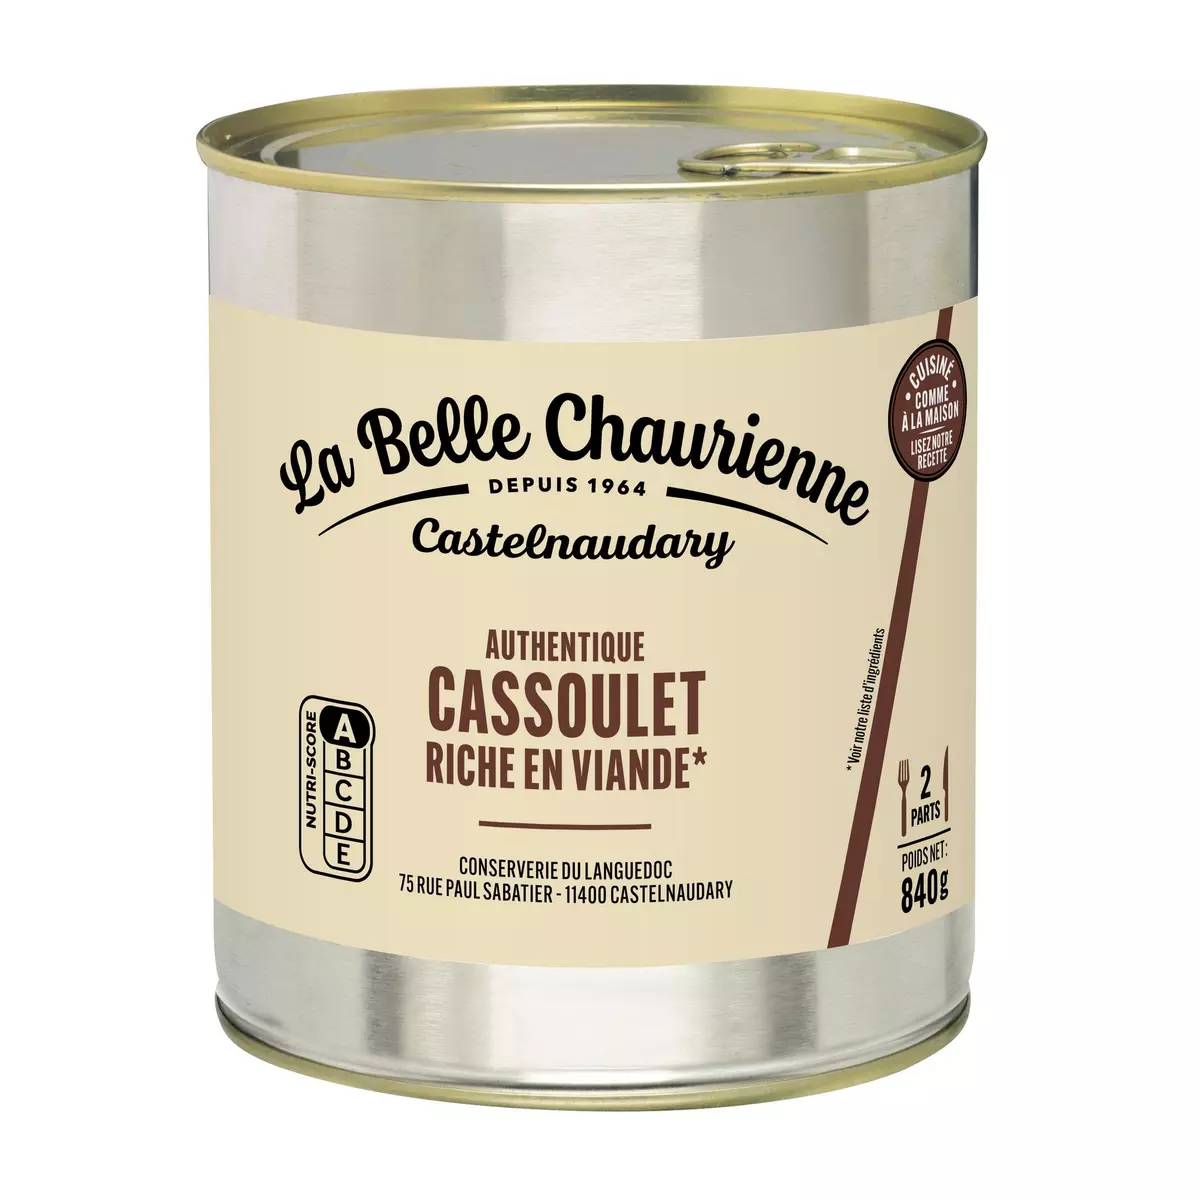 LA BELLE CHAURIENNE Authentique cassoulet riche en viande 2 portions 840g